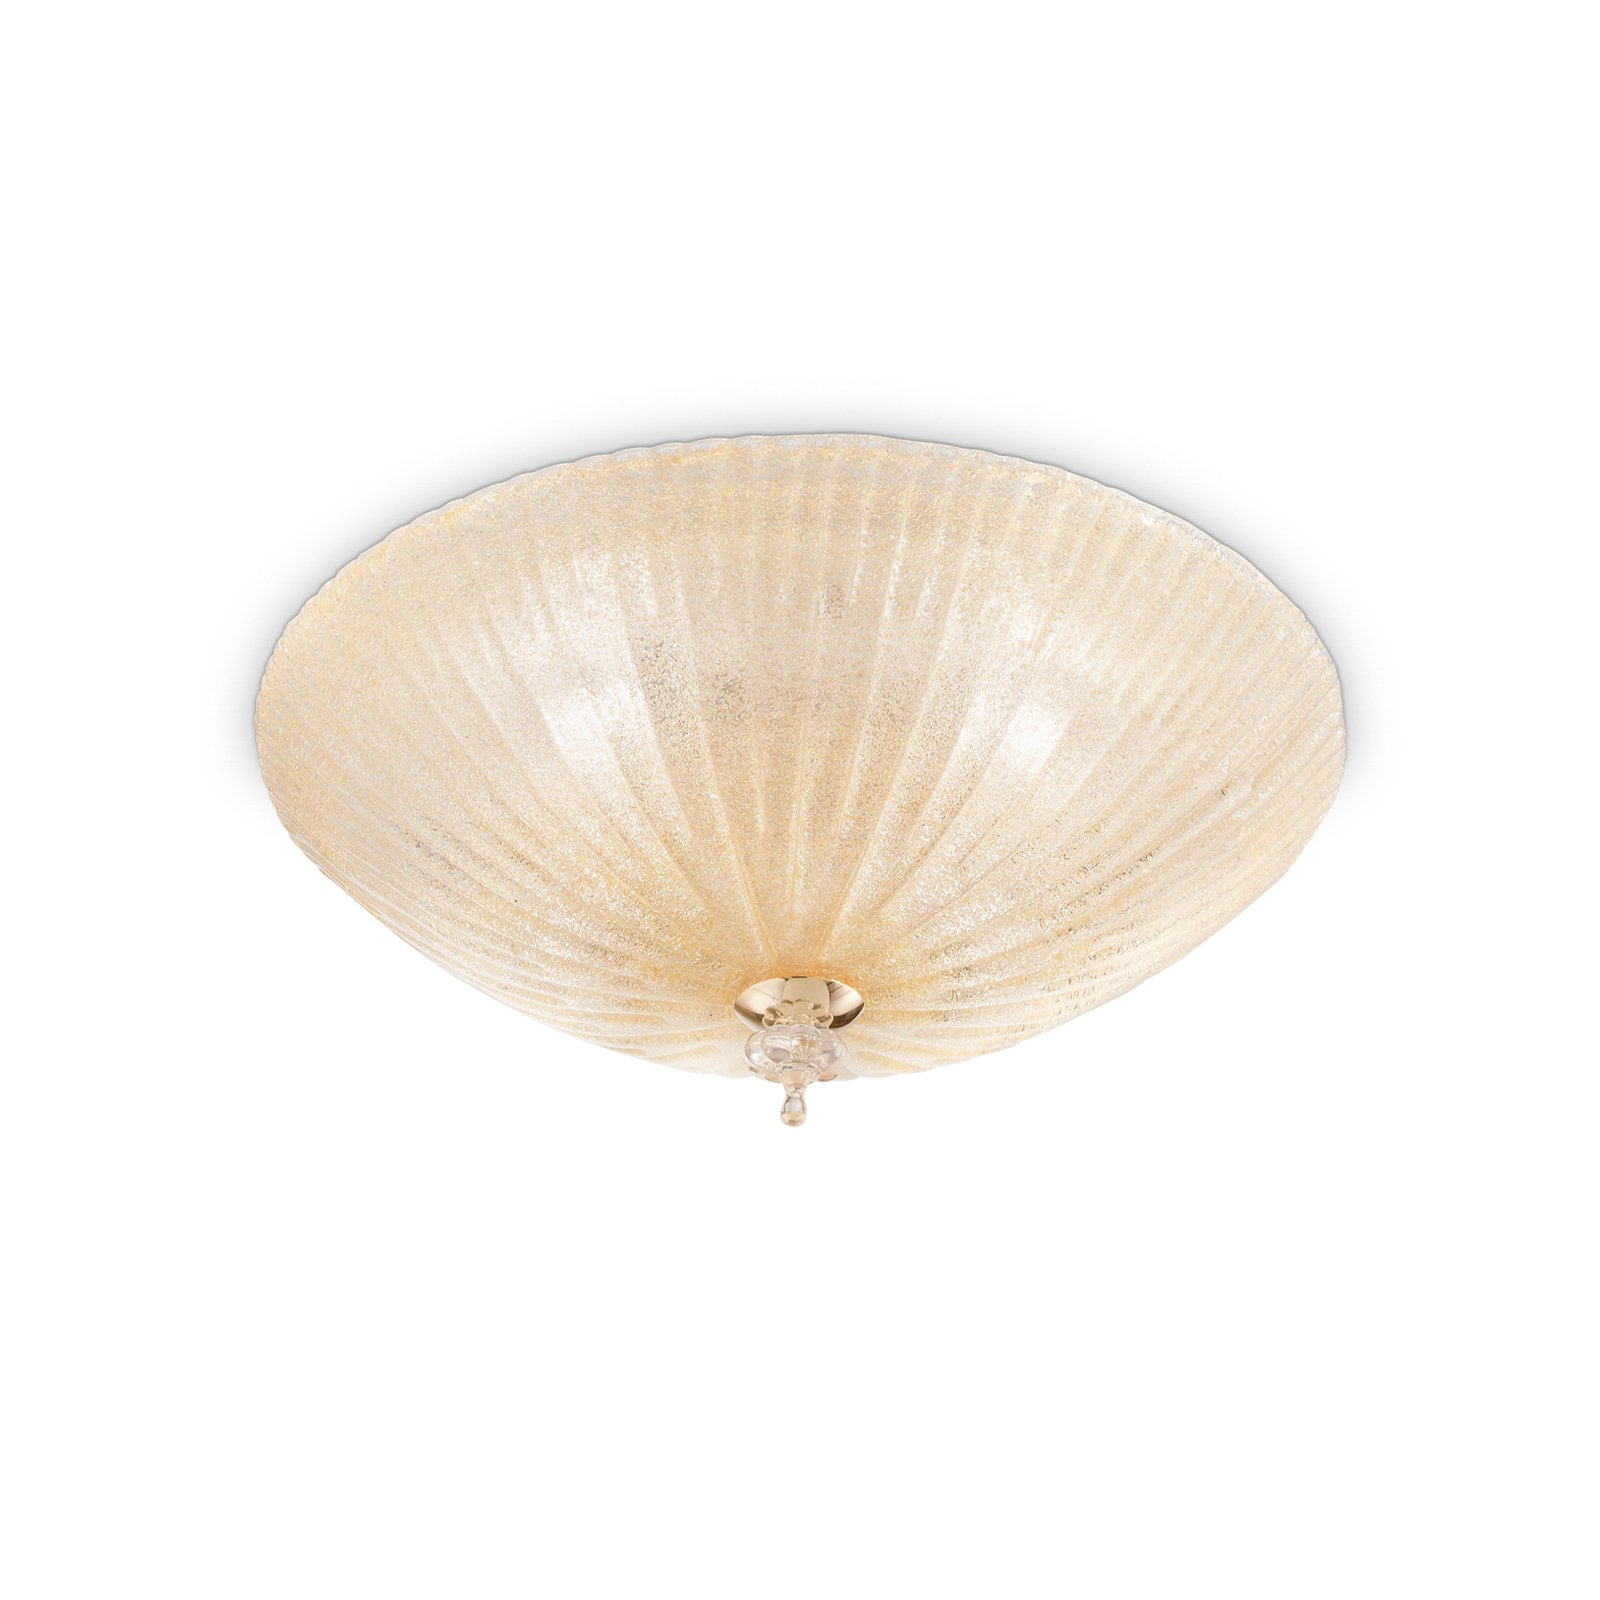 Ideal Lux Shell plafoniera, colore ambra, vetro, Ø 50 cm